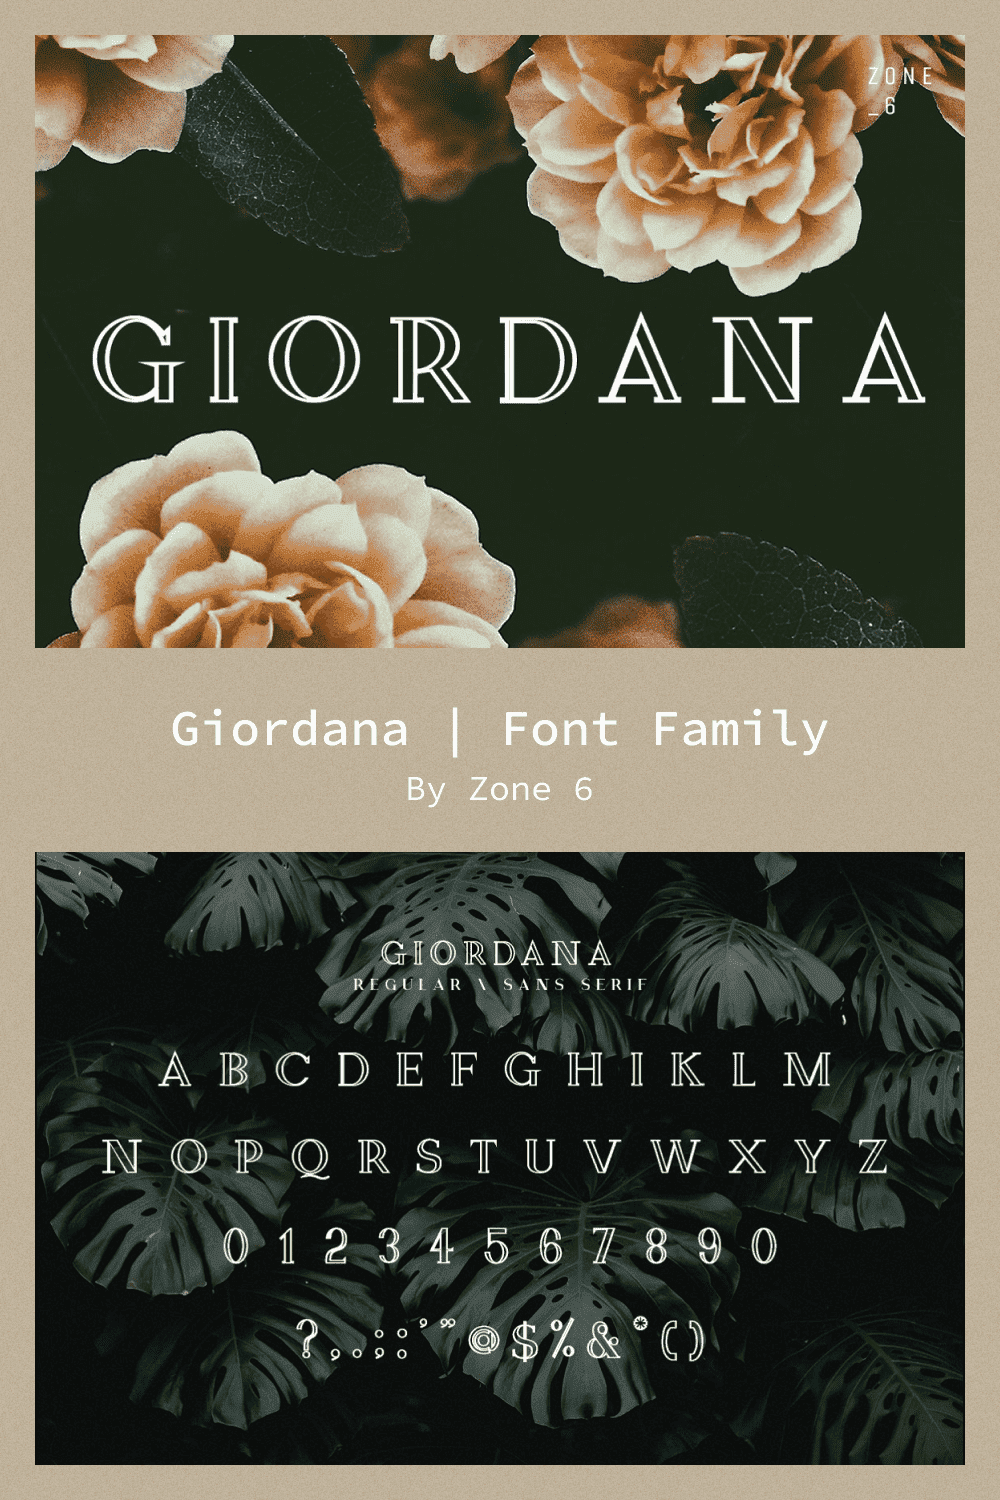 Giordana | Font Family.